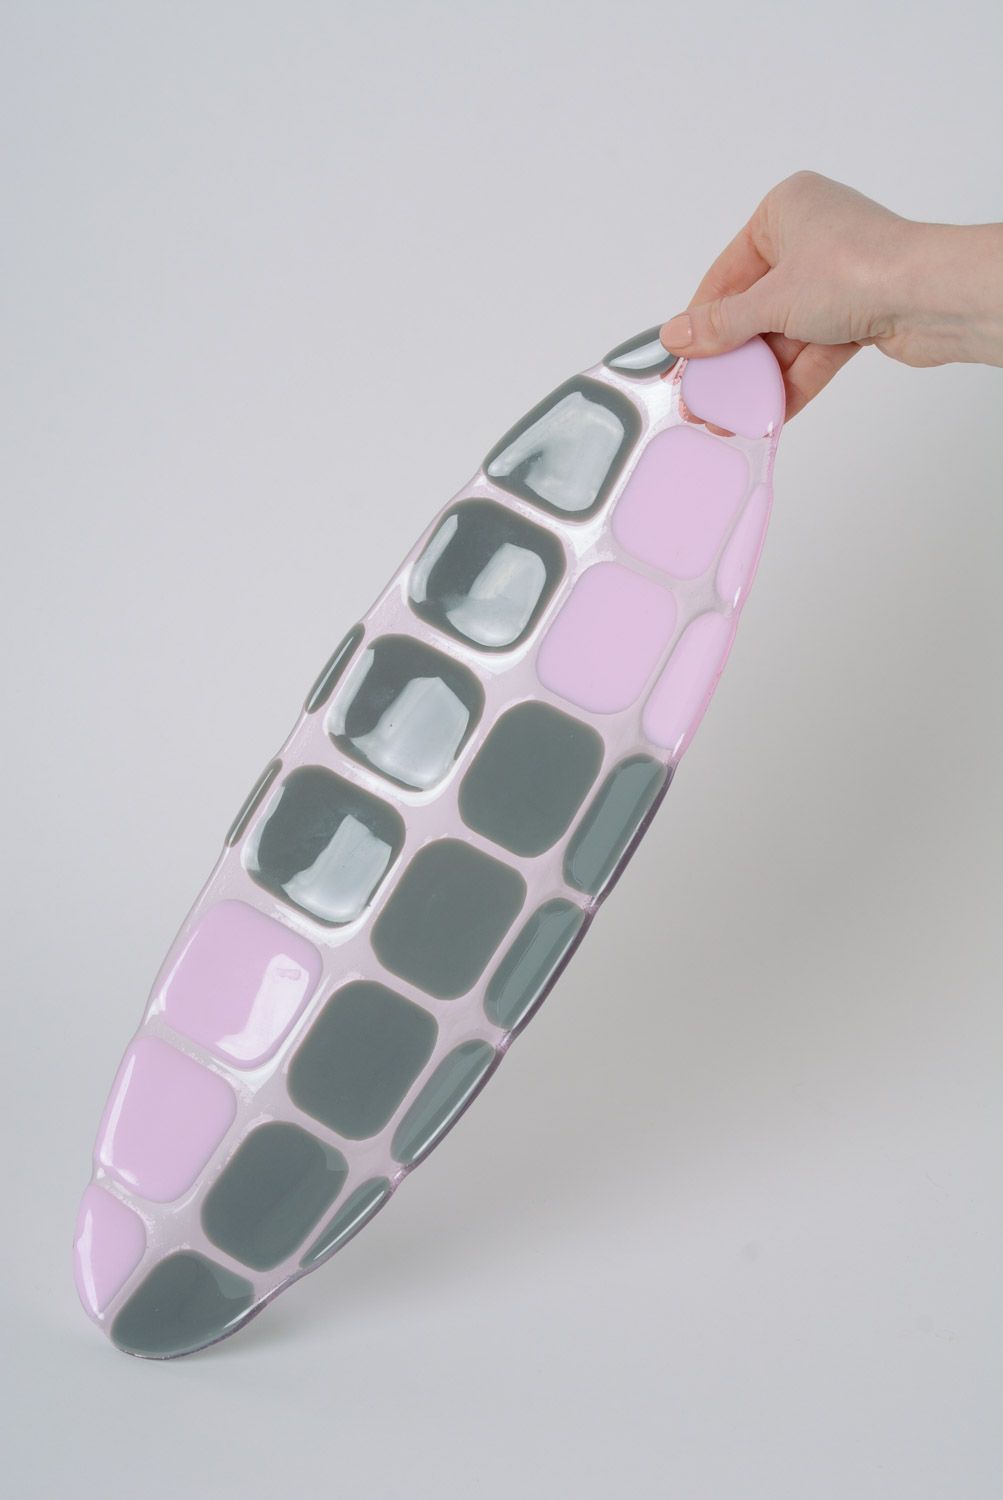 Тарелка из стекла овальная розовая с серым фьюзинг ручная работа для сервировки фото 2